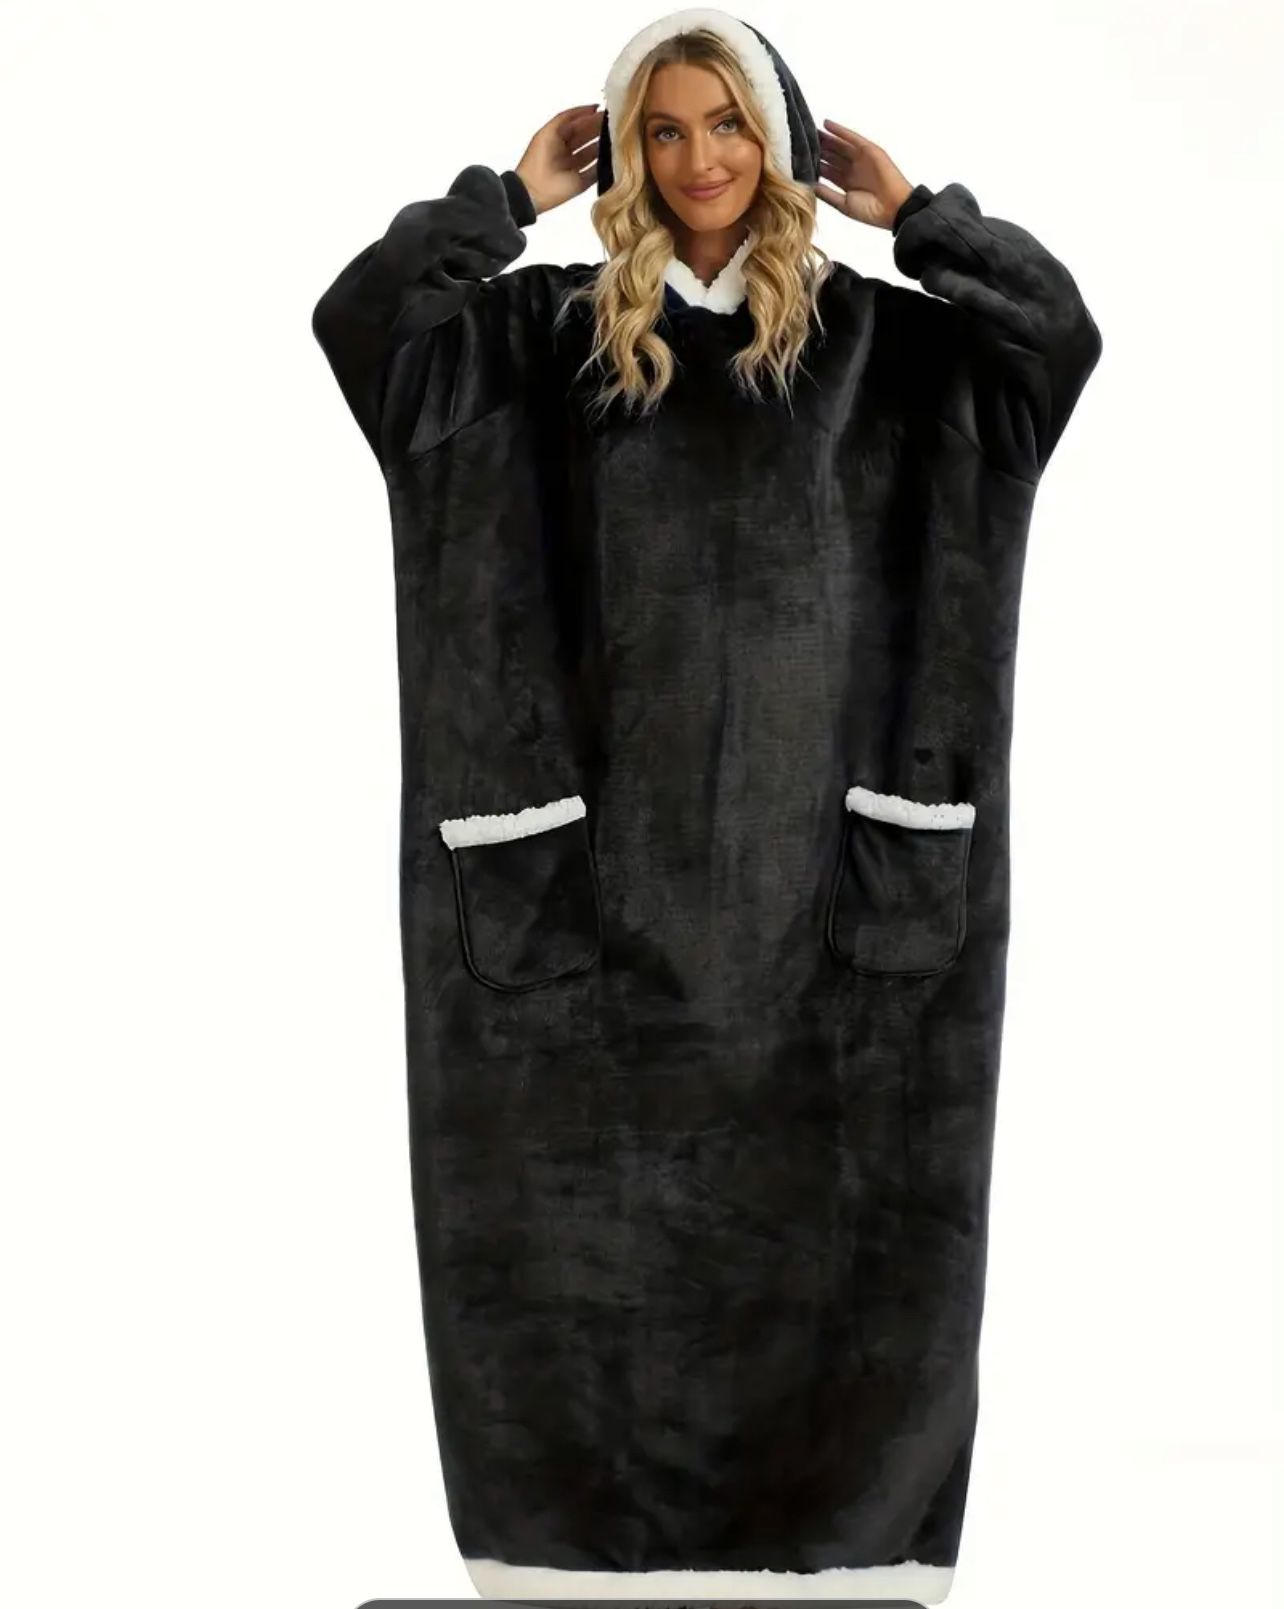 Women's Plus Size Long Sleeve Flannel Hooded Robe with Pockets - Cozy Oversized Fleece Loungewear Blanket